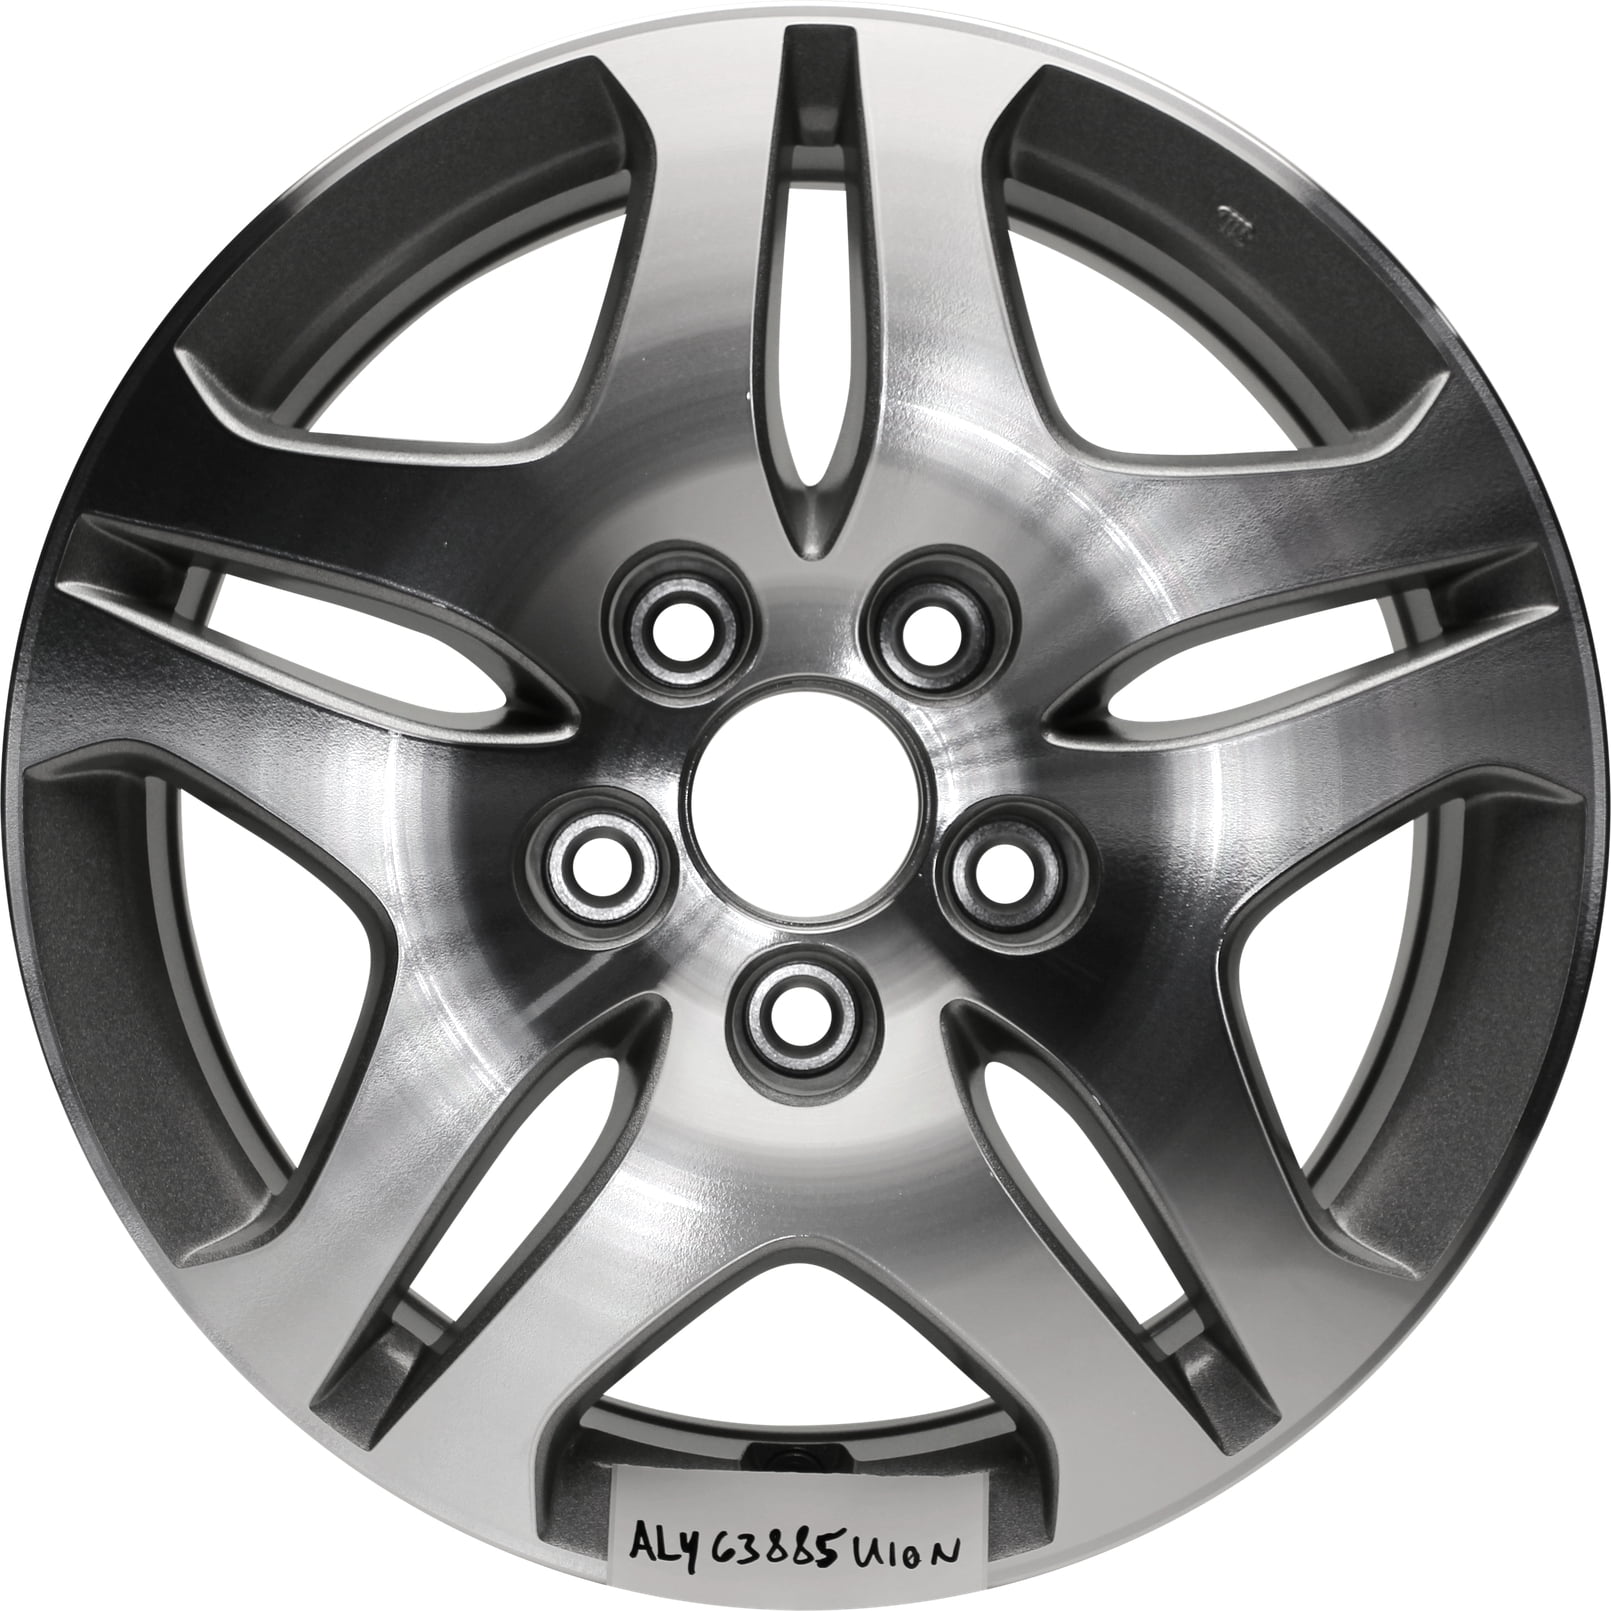 16 Inch Aluminum Wheel Rim For 07 10 Honda Odyssey 5 Lug Tire Fits R16 Walmart Com Walmart Com